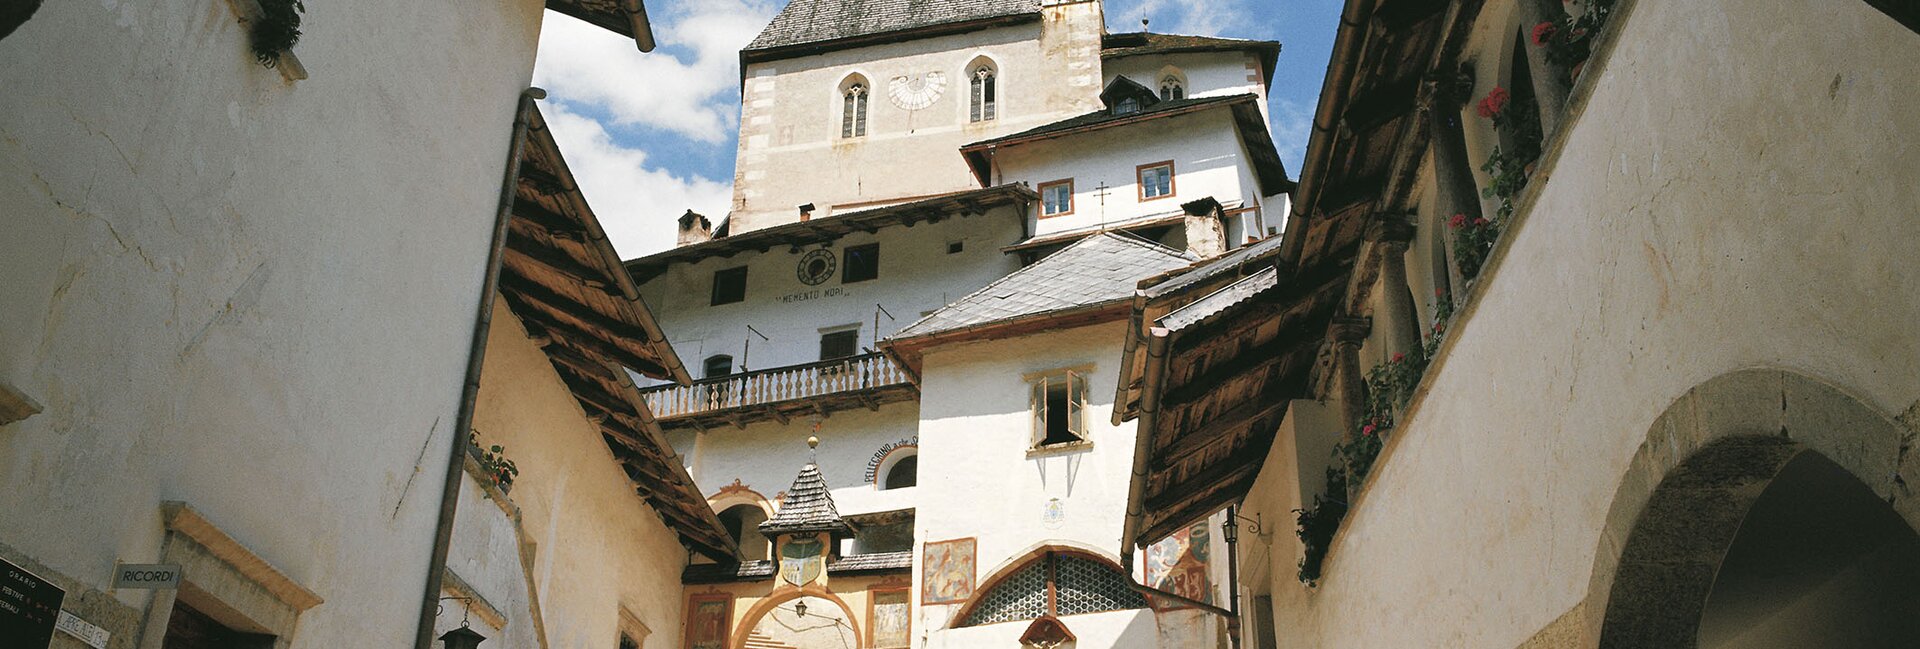 Heilige und historische Orte im September und Oktober im Trentino zu besuchen